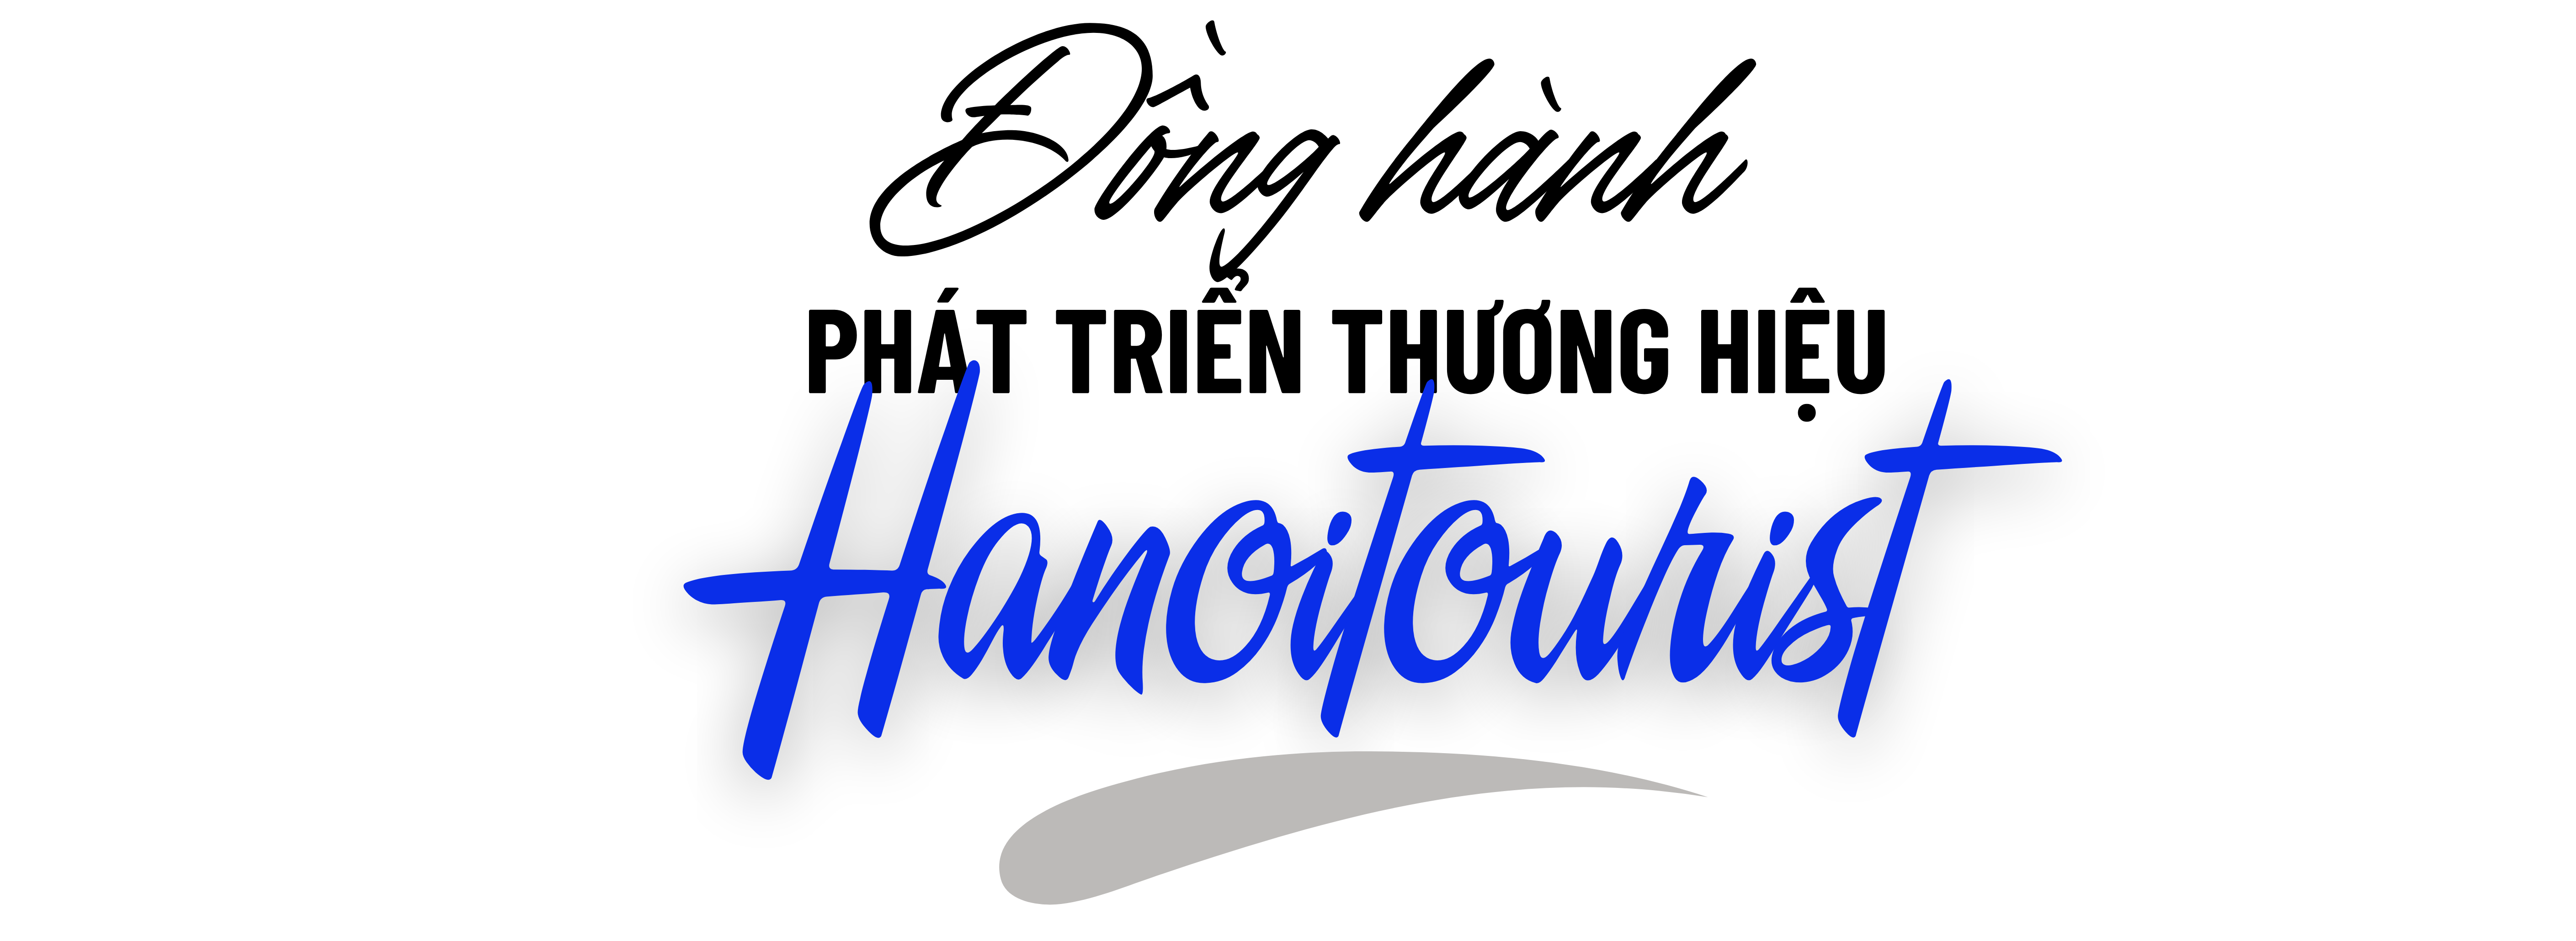 Công đoàn đồng hành nâng tầm giá trị thương hiệu Hanoitourist